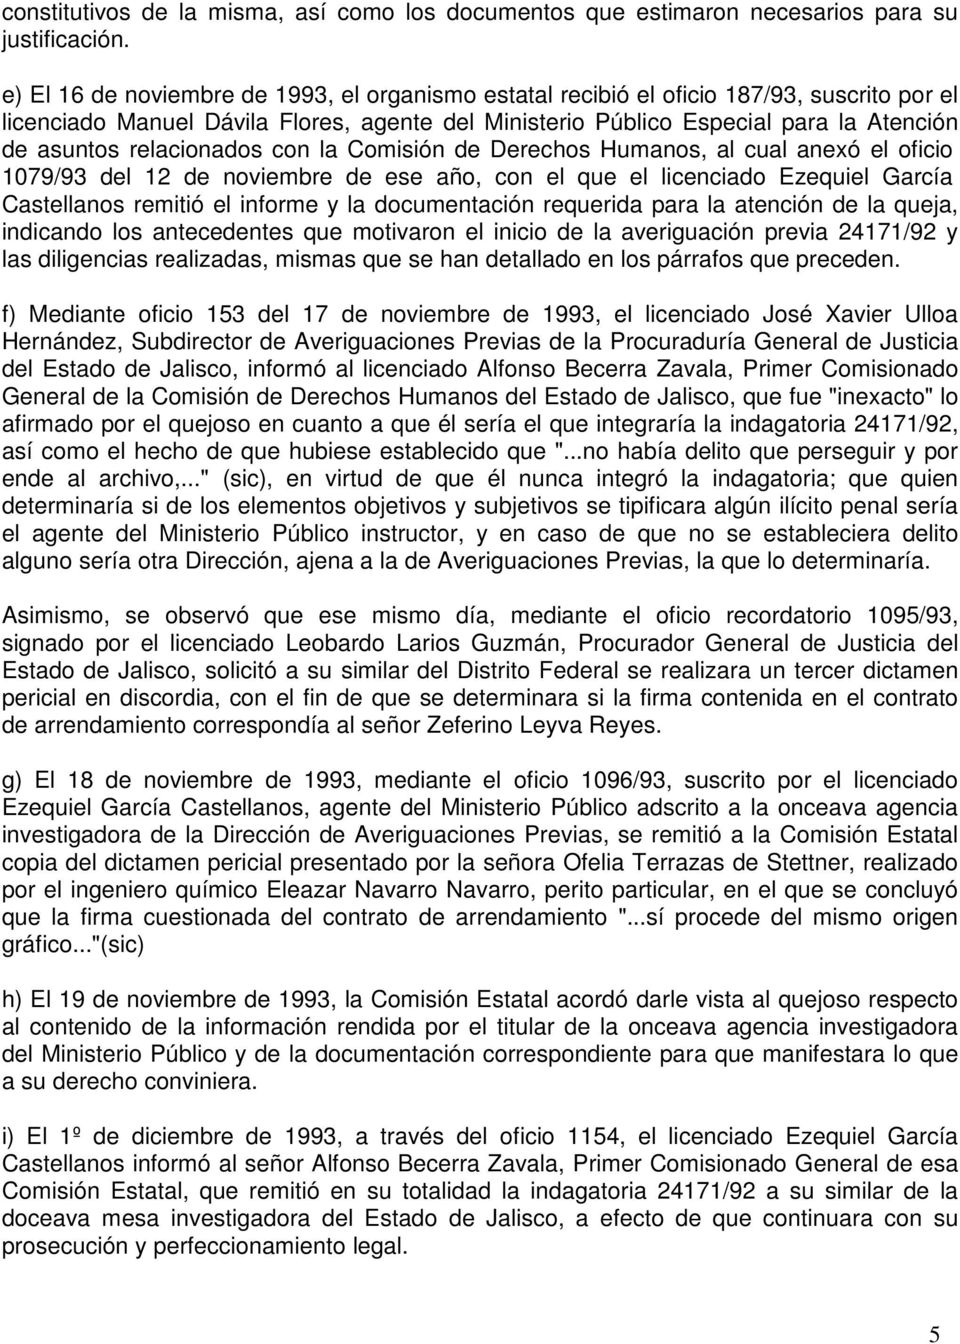 relacionados con la Comisión de Derechos Humanos, al cual anexó el oficio 1079/93 del 12 de noviembre de ese año, con el que el licenciado Ezequiel García Castellanos remitió el informe y la